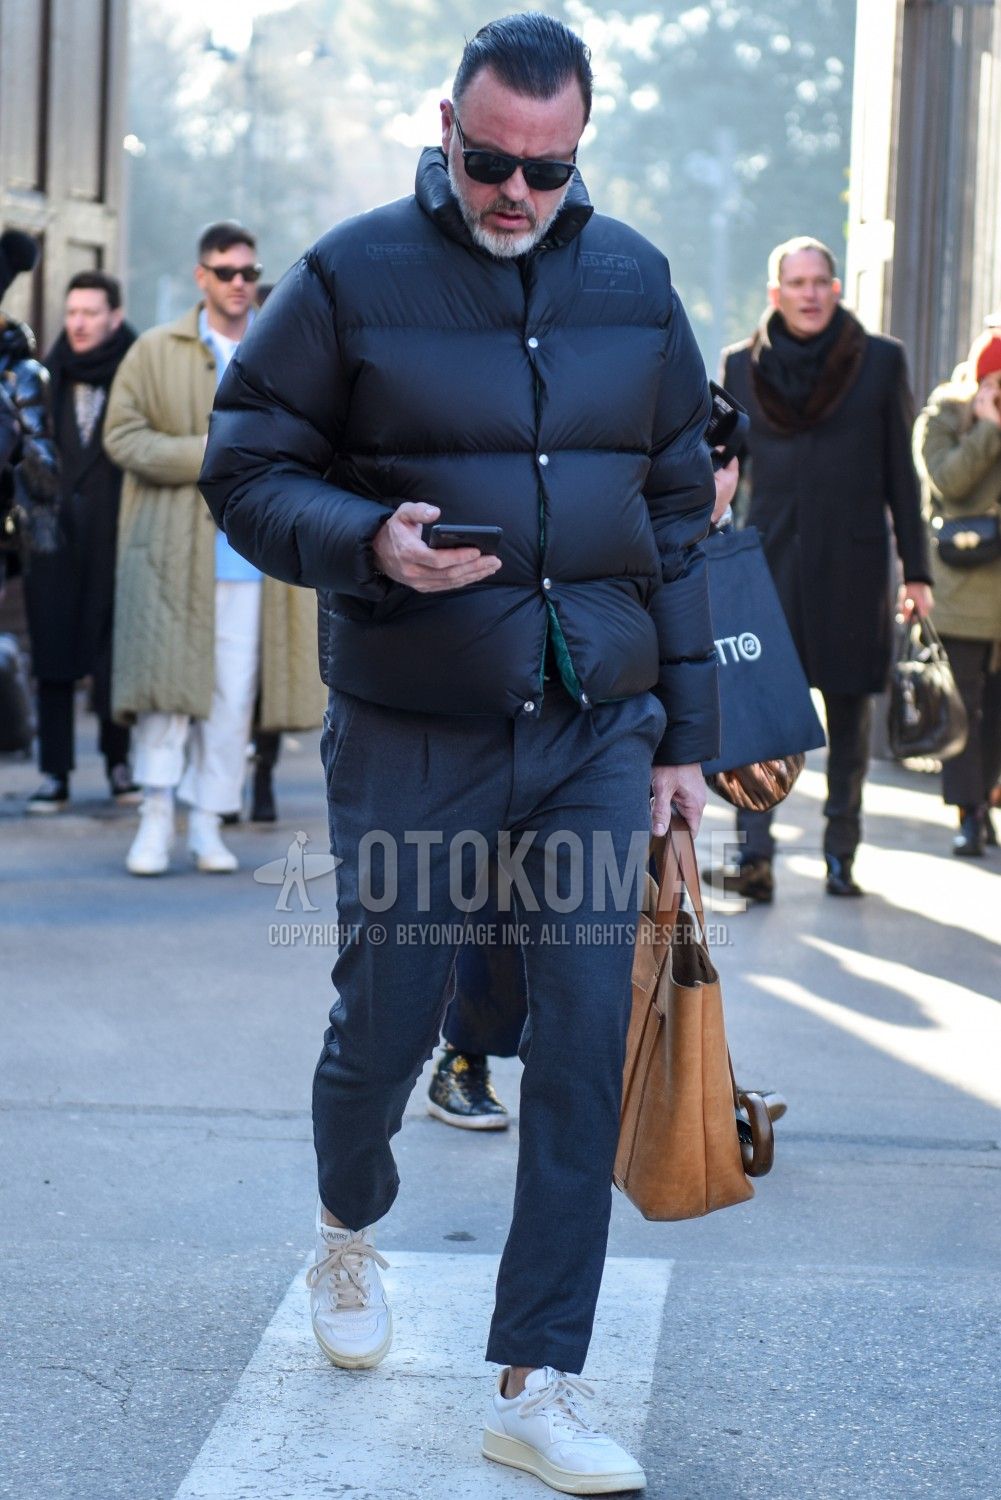 真冬コーデ メンズ特集 格上げに最適な8の手段 メンズファッションメディア Otokomaeotokomae 男前研究所